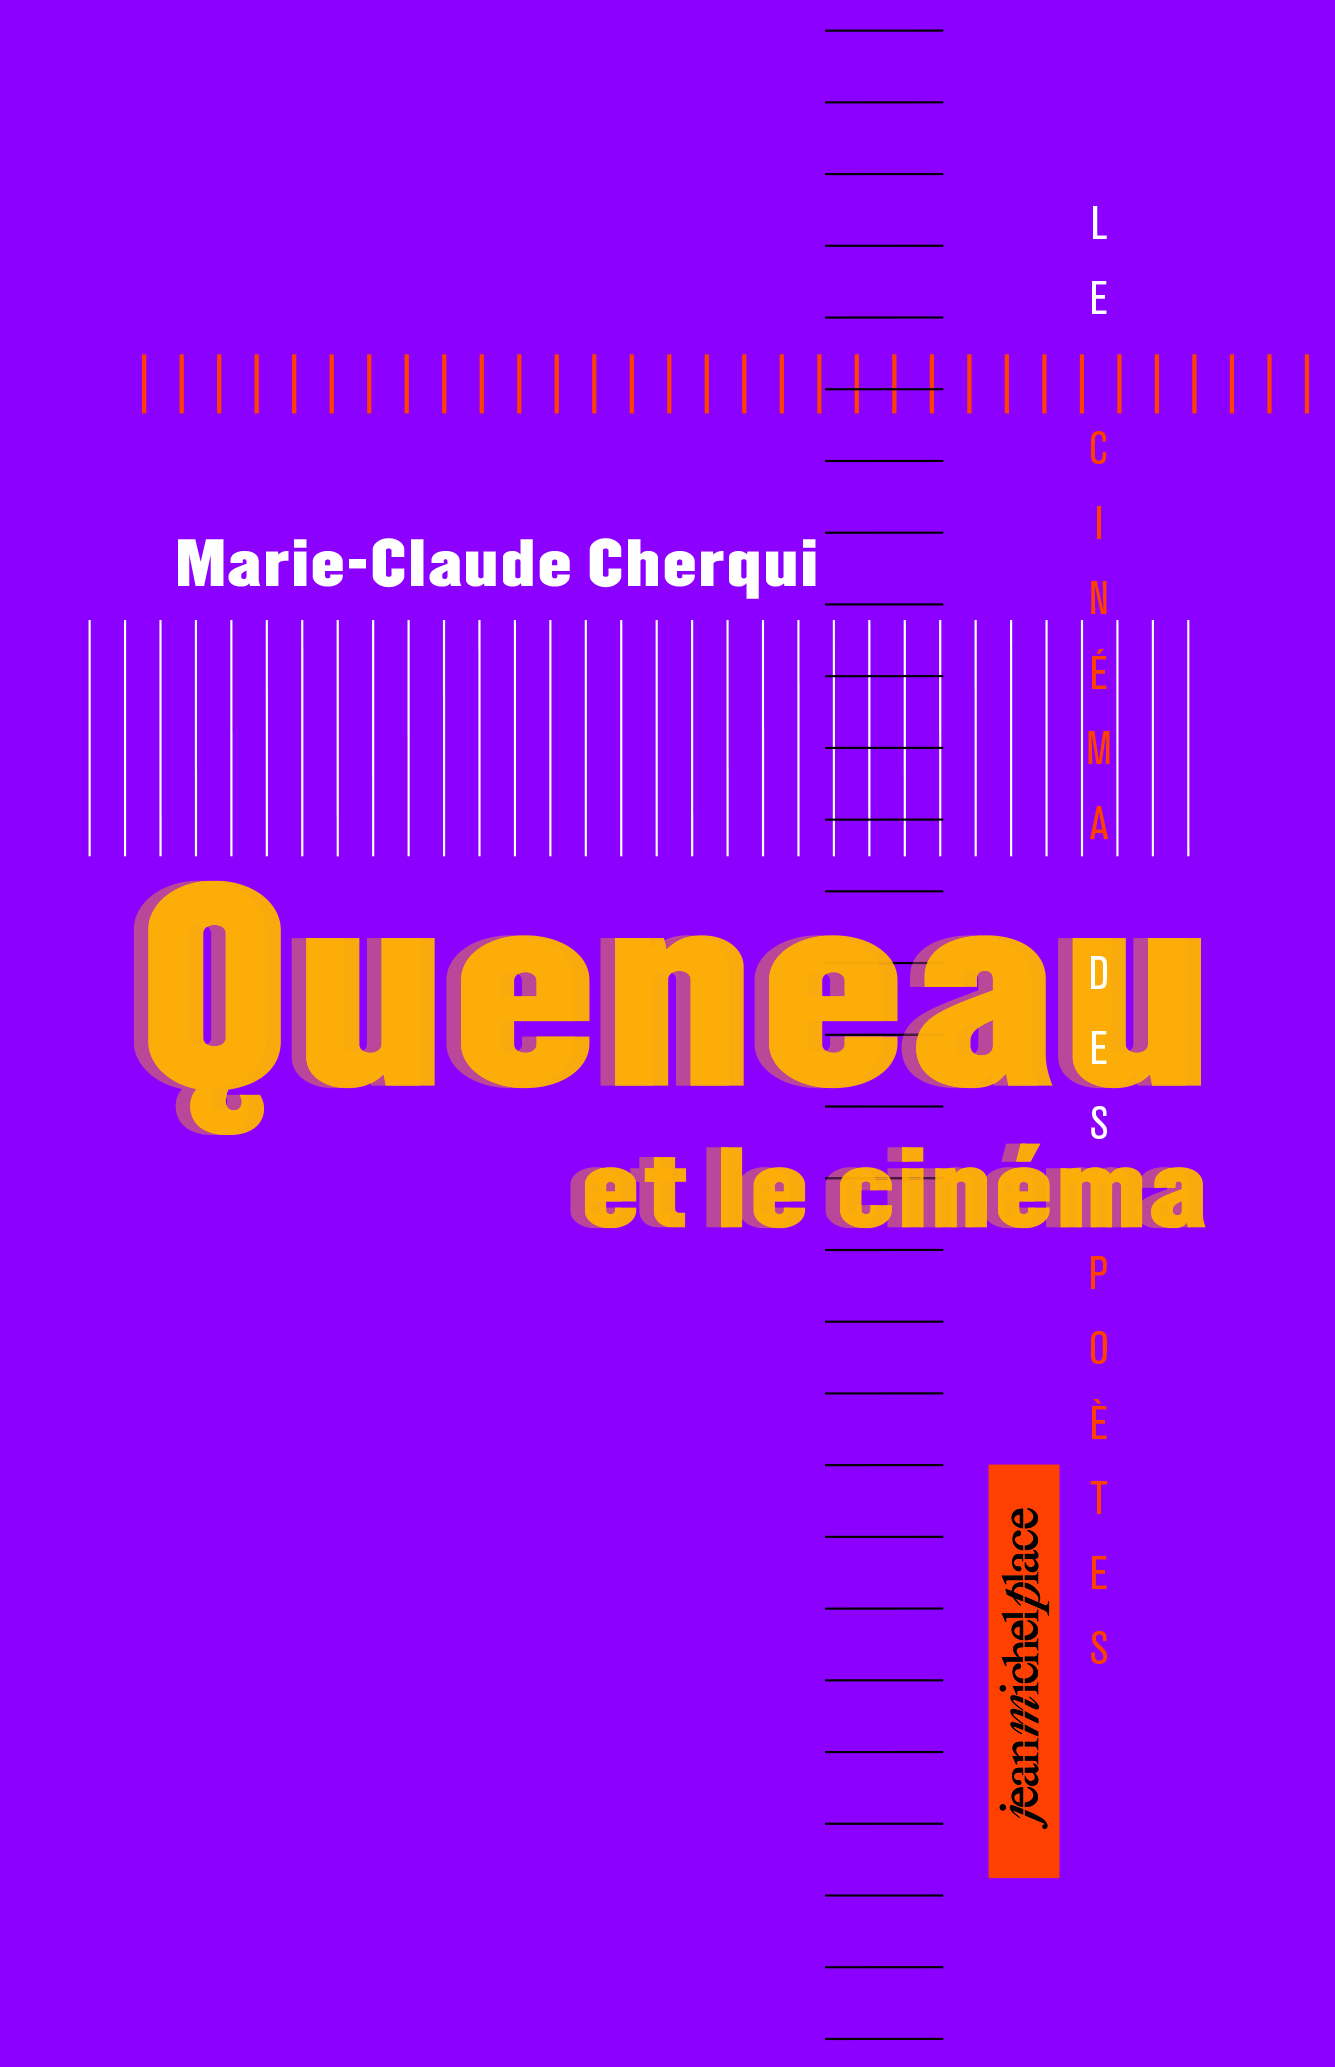 M.-C. Cherqui, Queneau et le cinéma